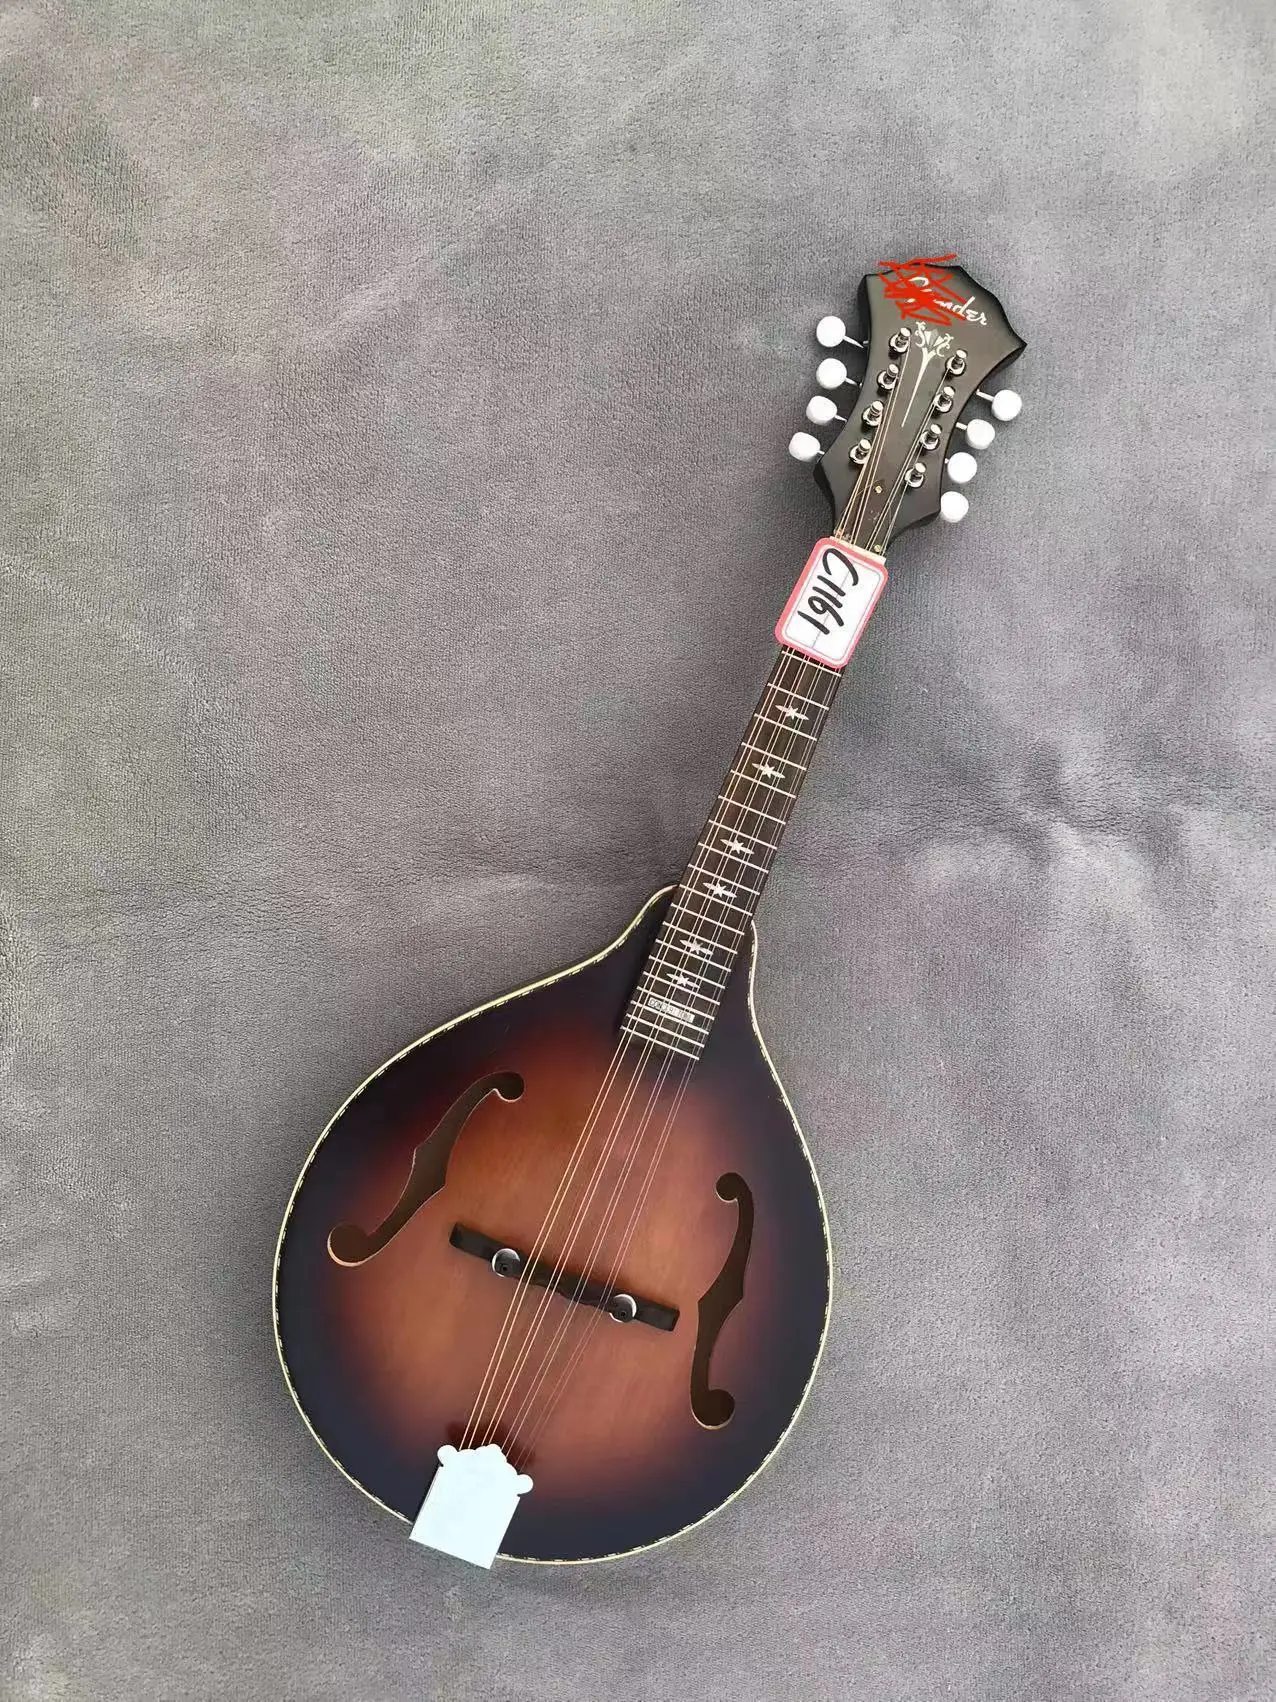 

Хорошее качество F 8 струн мандолин гитара ламинированный деревянный корпус фотосессия скидка Бесплатная доставка C1161